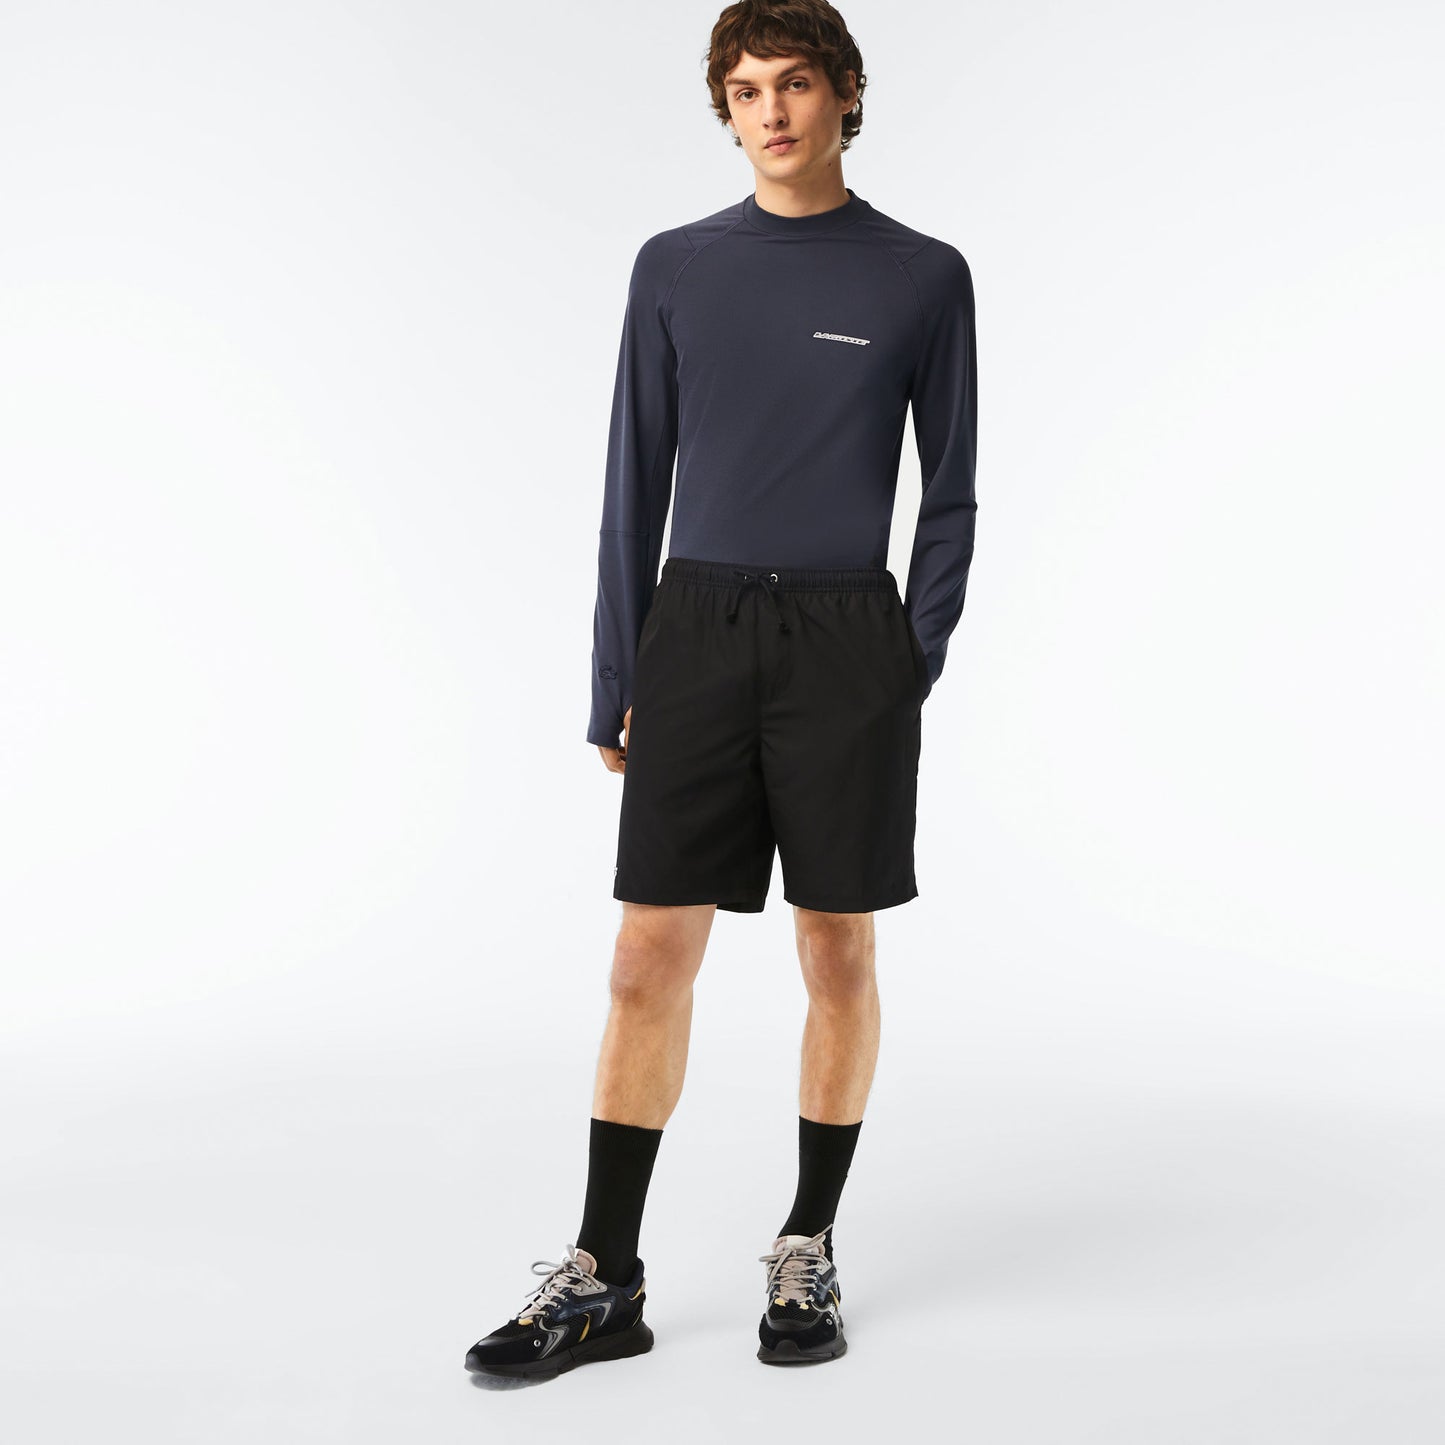 Lacoste Core Men's Tennis Shorts Black (4)